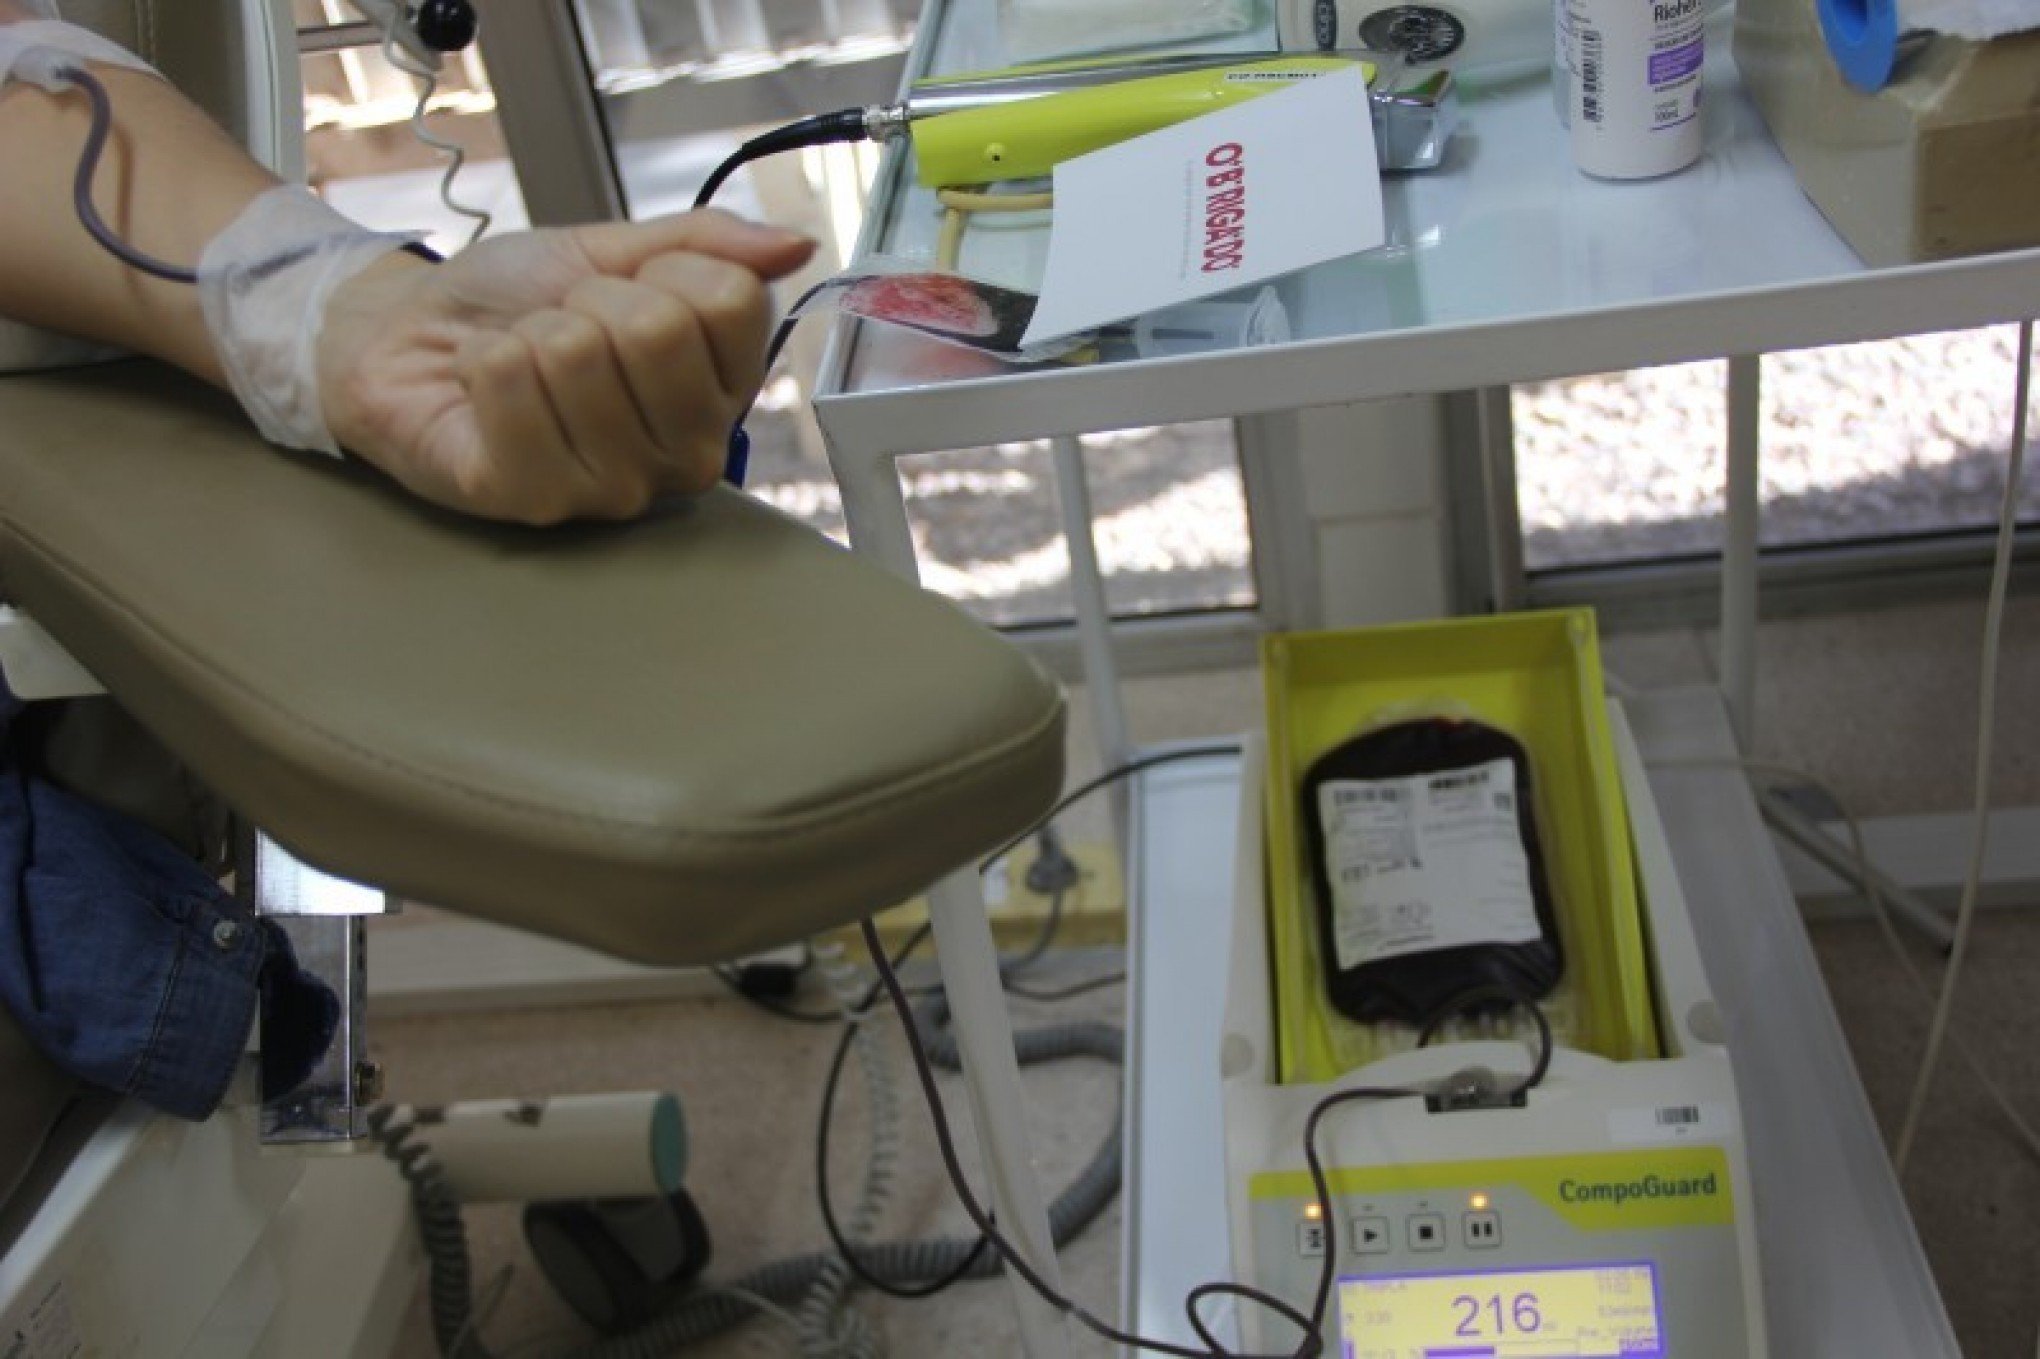 CATÁSTROFE NO RS: Hemocentro pede que doadores de sangue façam agendamento pela internet; saiba como marcar horário